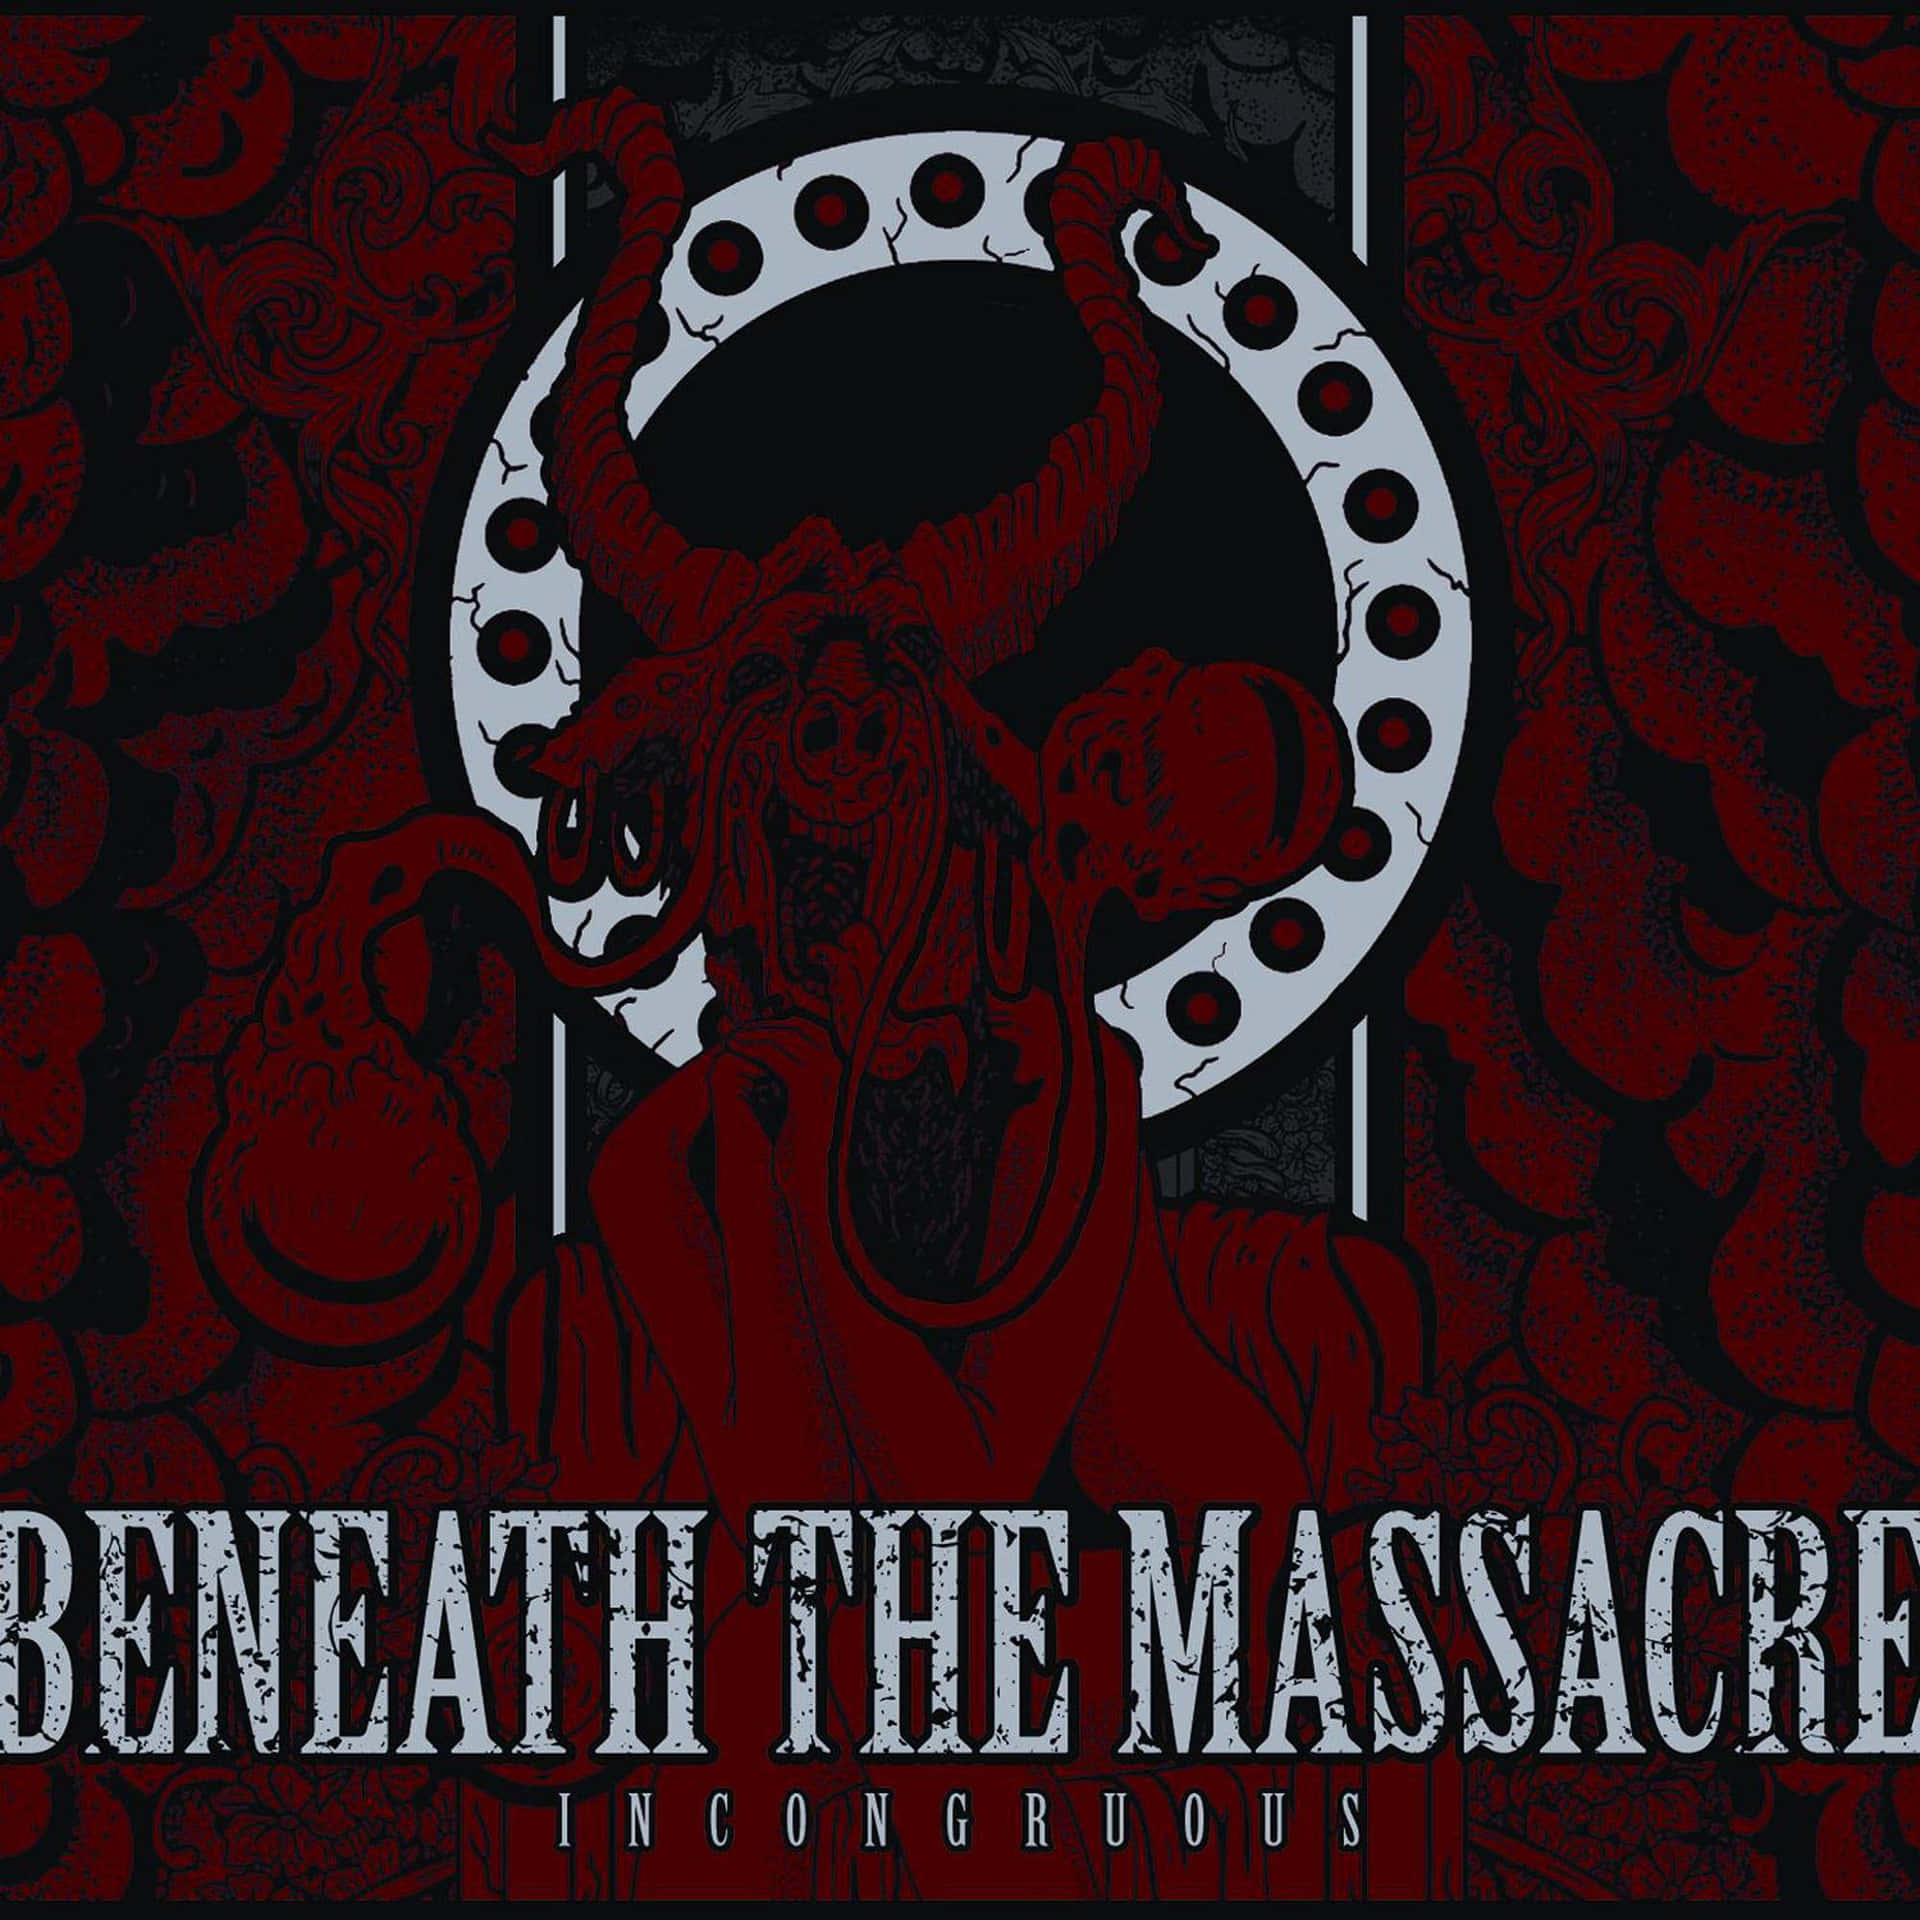 Incongruous Album By Beneath The Massacre Wallpaper